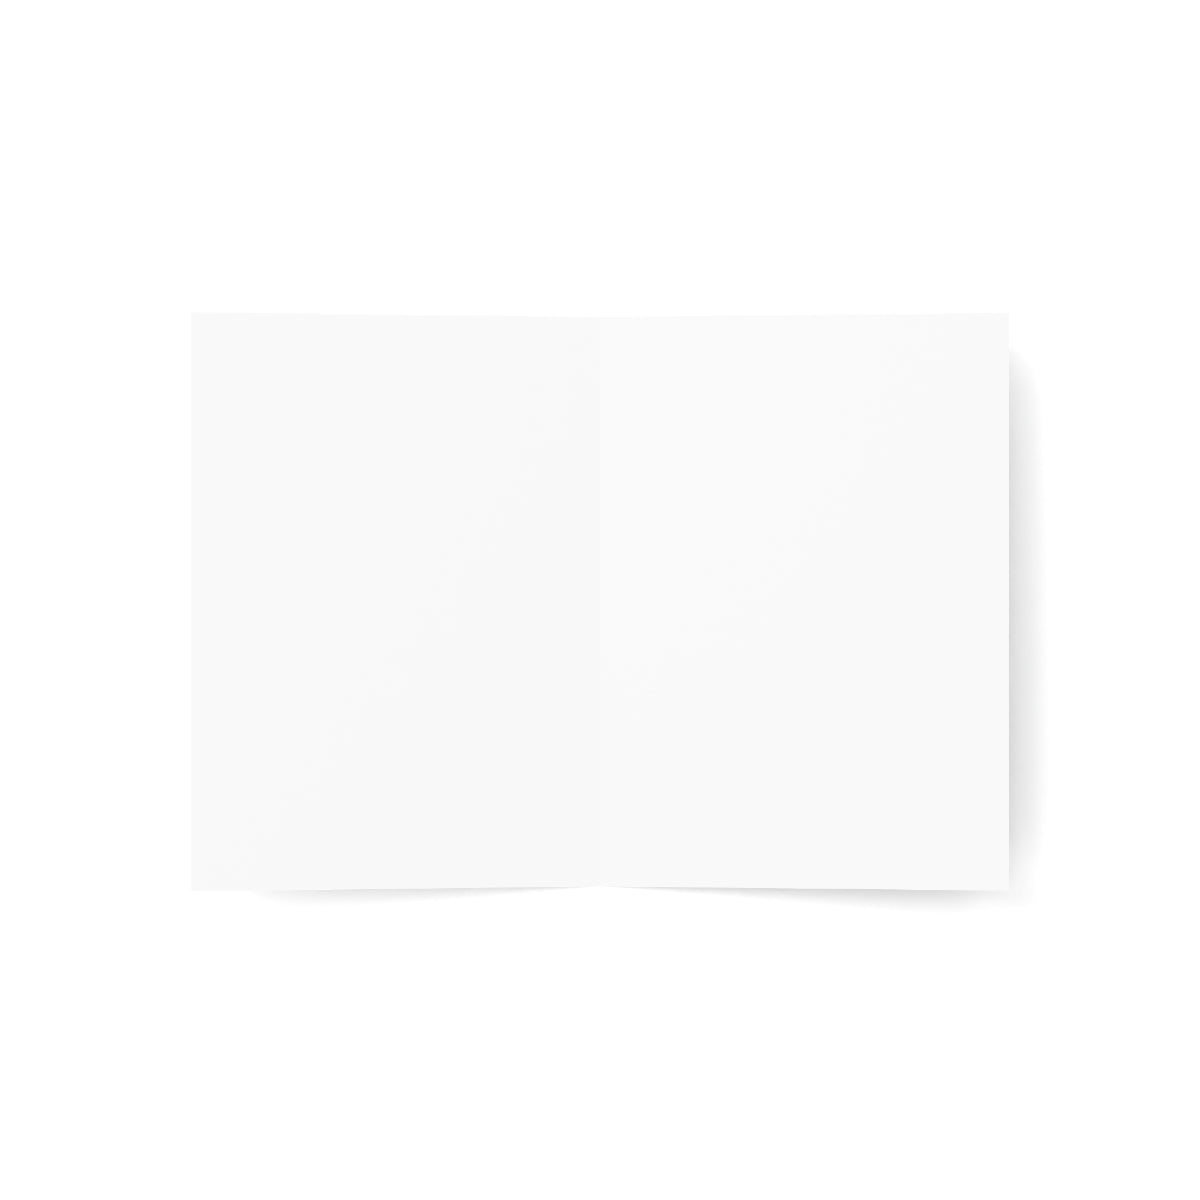 Cartes de notes mates pliées Mammoth Lakes + enveloppes (10 pièces)